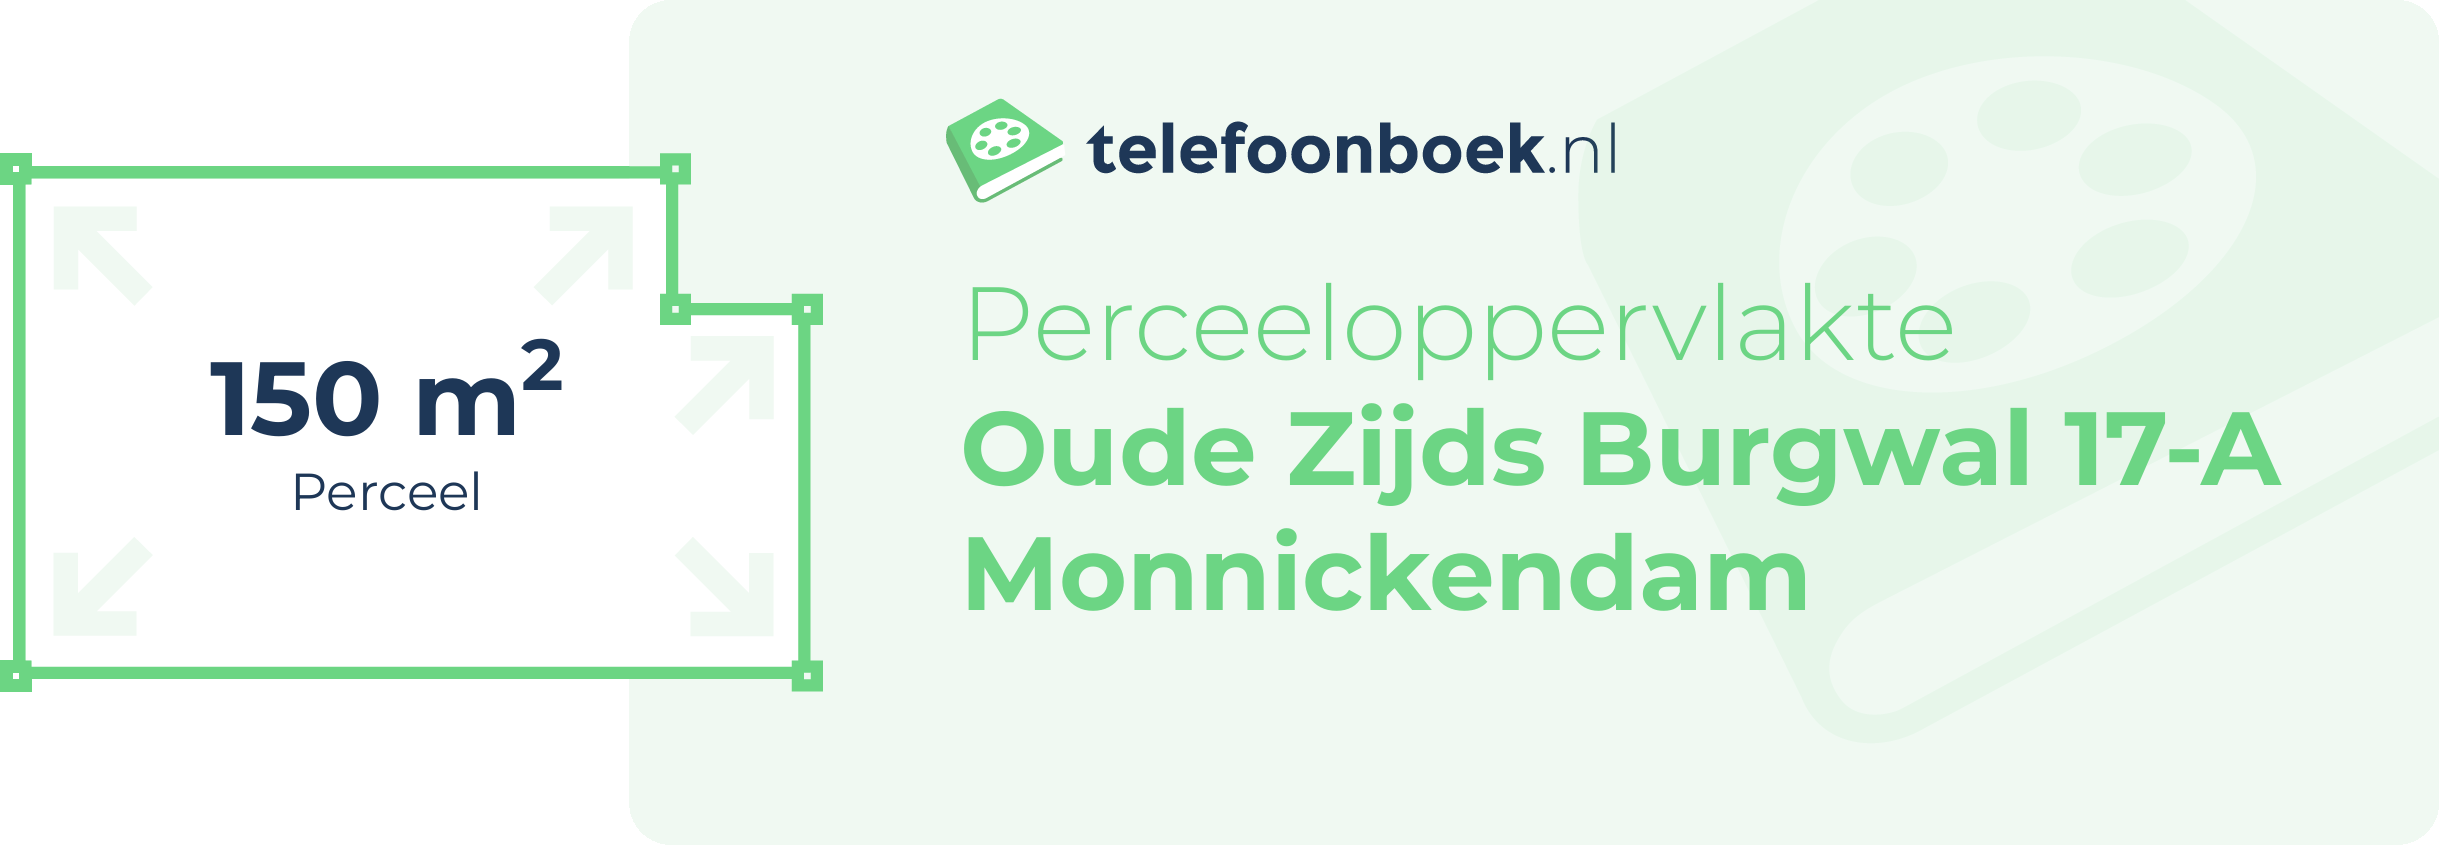 Perceeloppervlakte Oude Zijds Burgwal 17-A Monnickendam